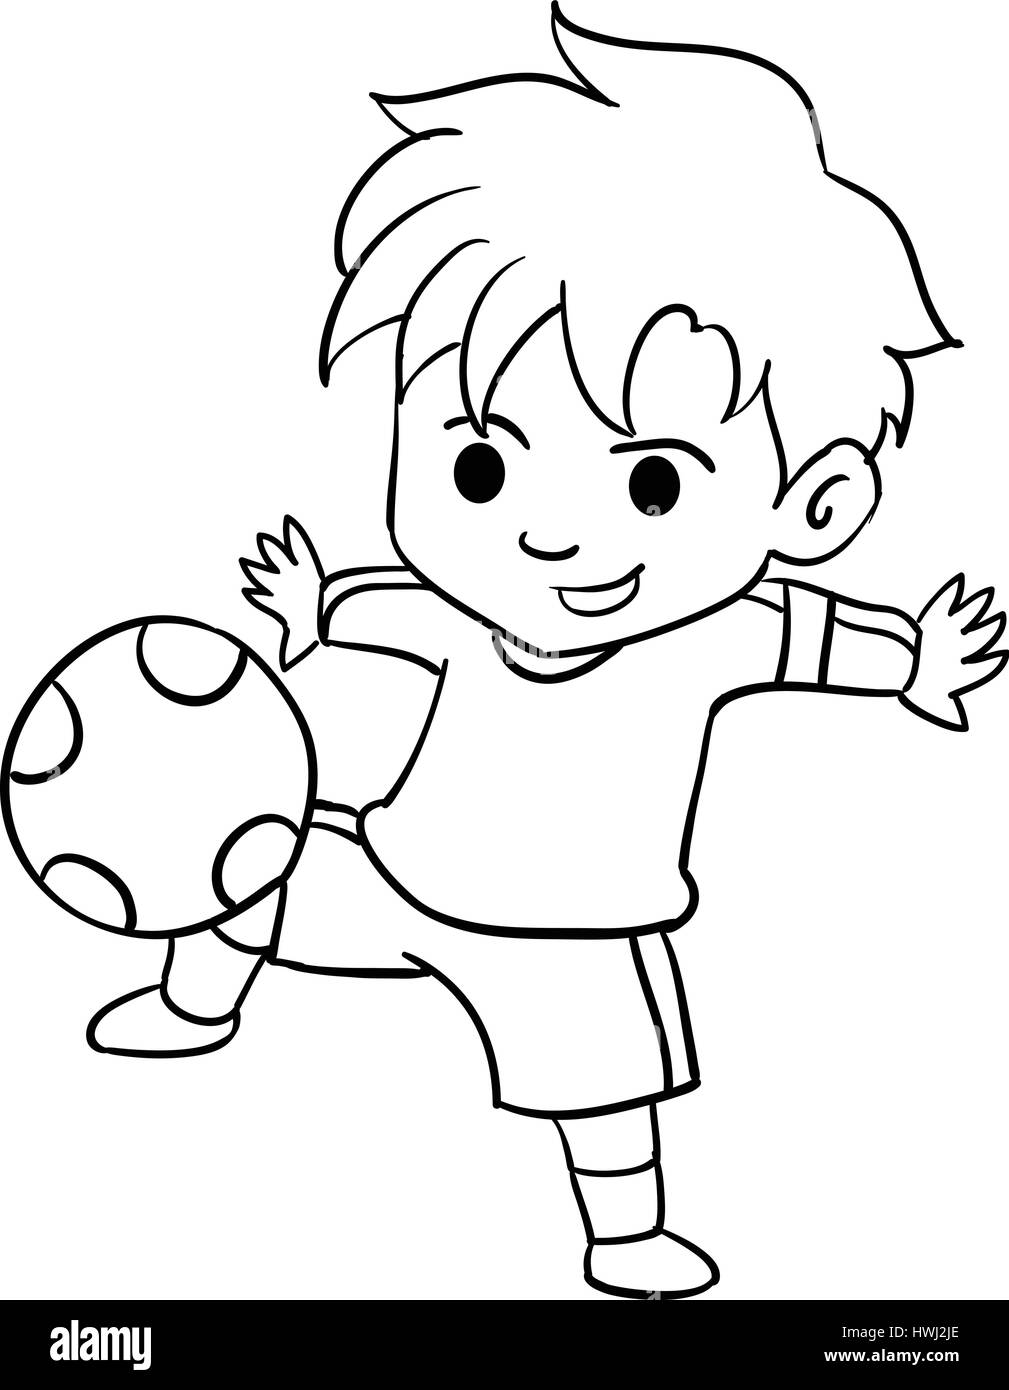 Рисунок детей играющих в футбол